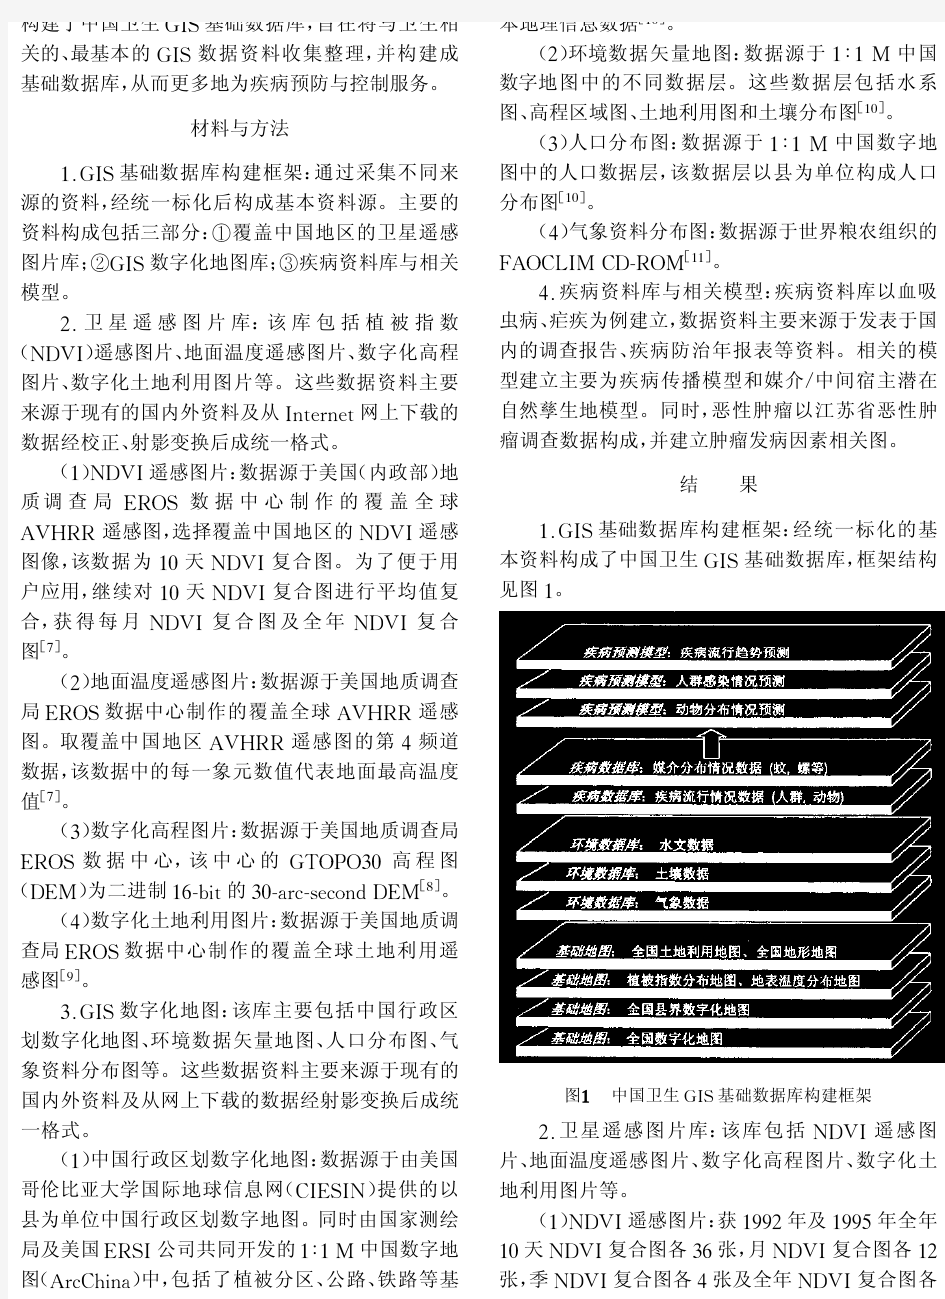 中国卫生地理信息系统基础数据库的构建-中华流行病学杂志